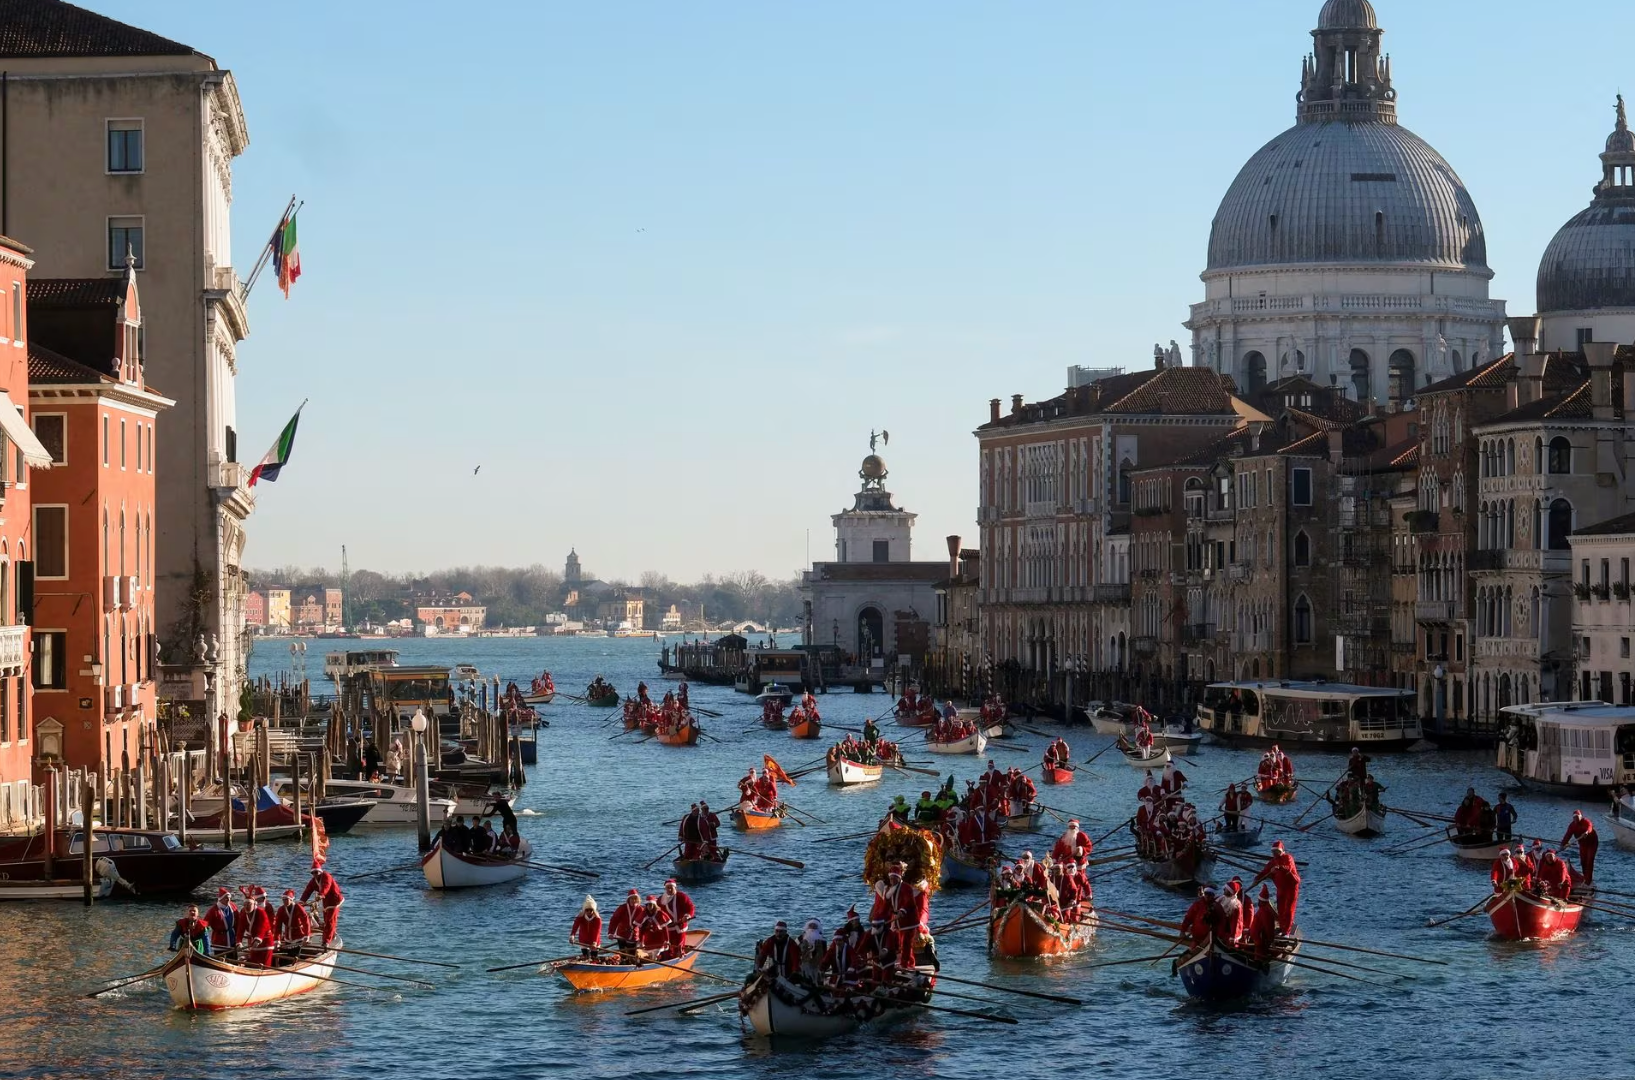 Người dân và du khách hóa trang thành ông già Noel và chèo thuyền tại sông Venice, Ý vào ngày 17-12 - Ảnh: REUTERS